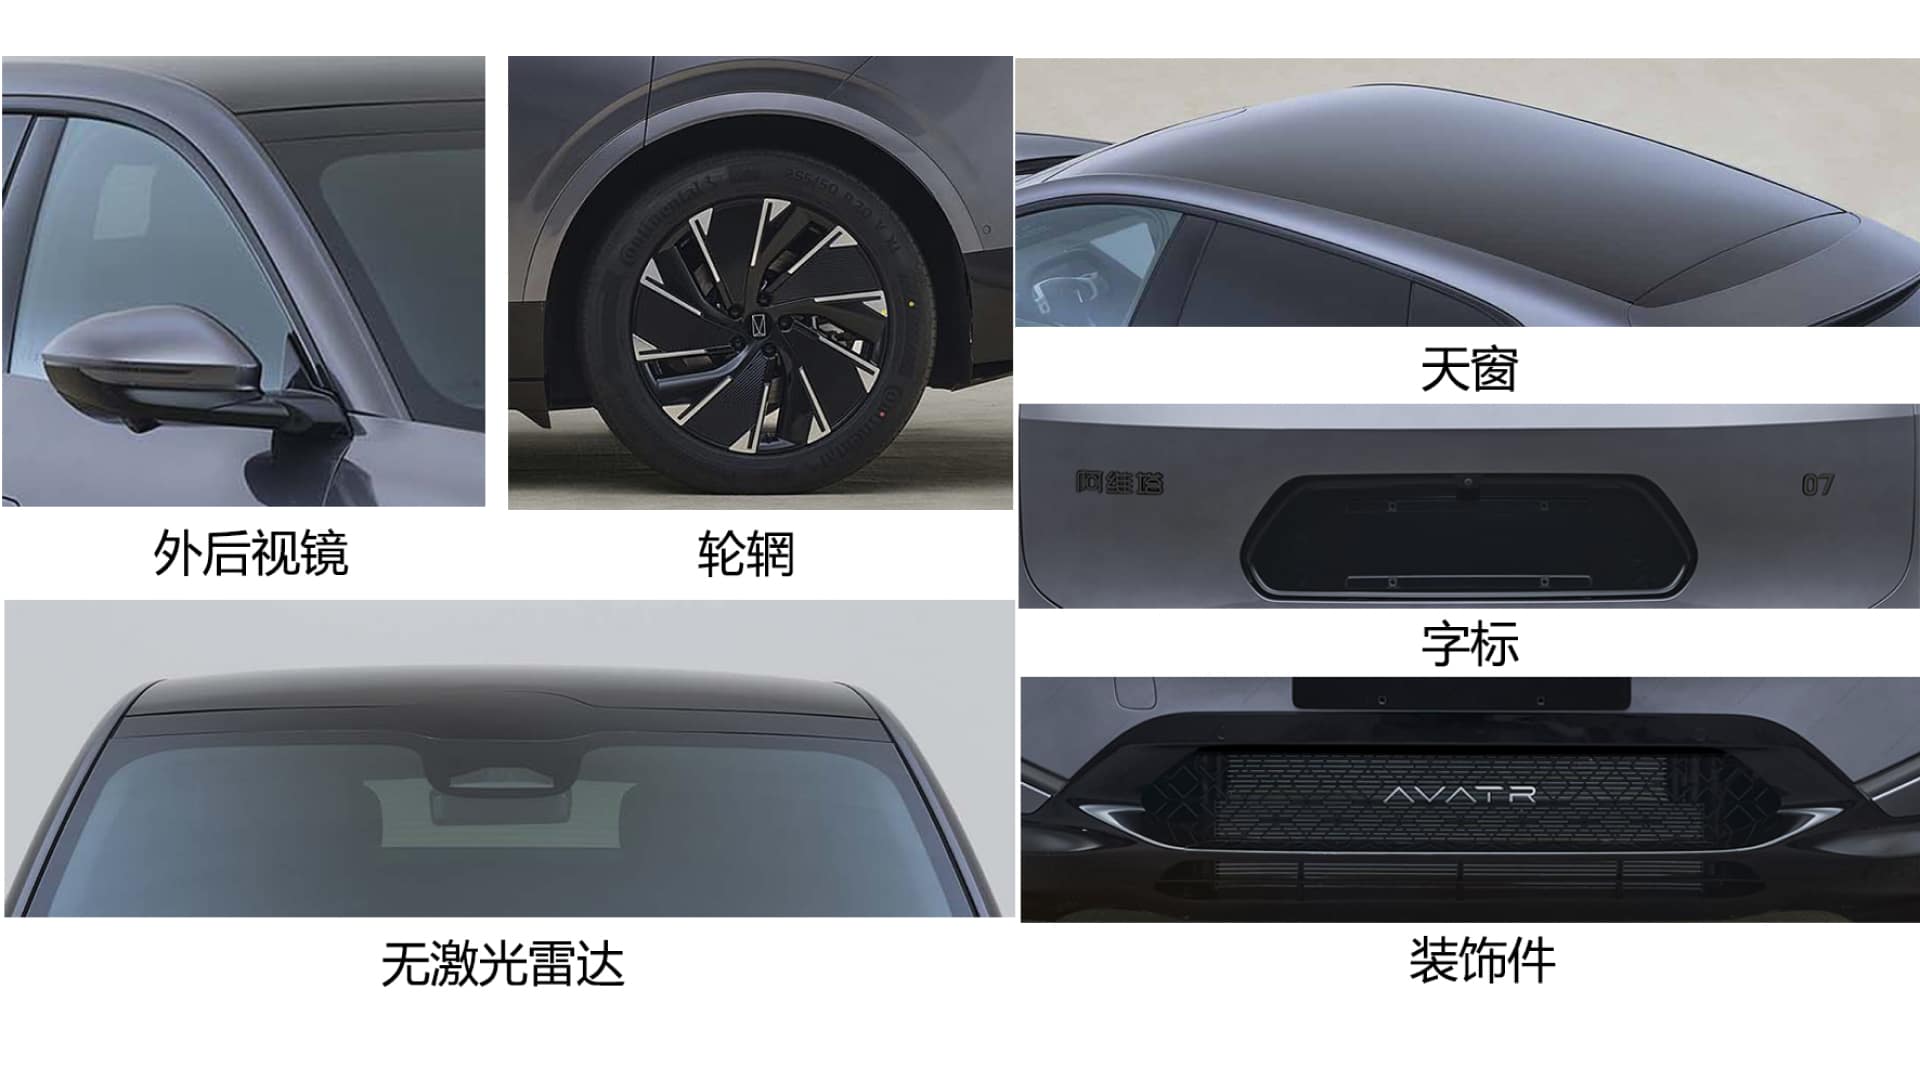 Китайская компания MIIT раскрыла технические характеристики нового кроссовера Avatr 07